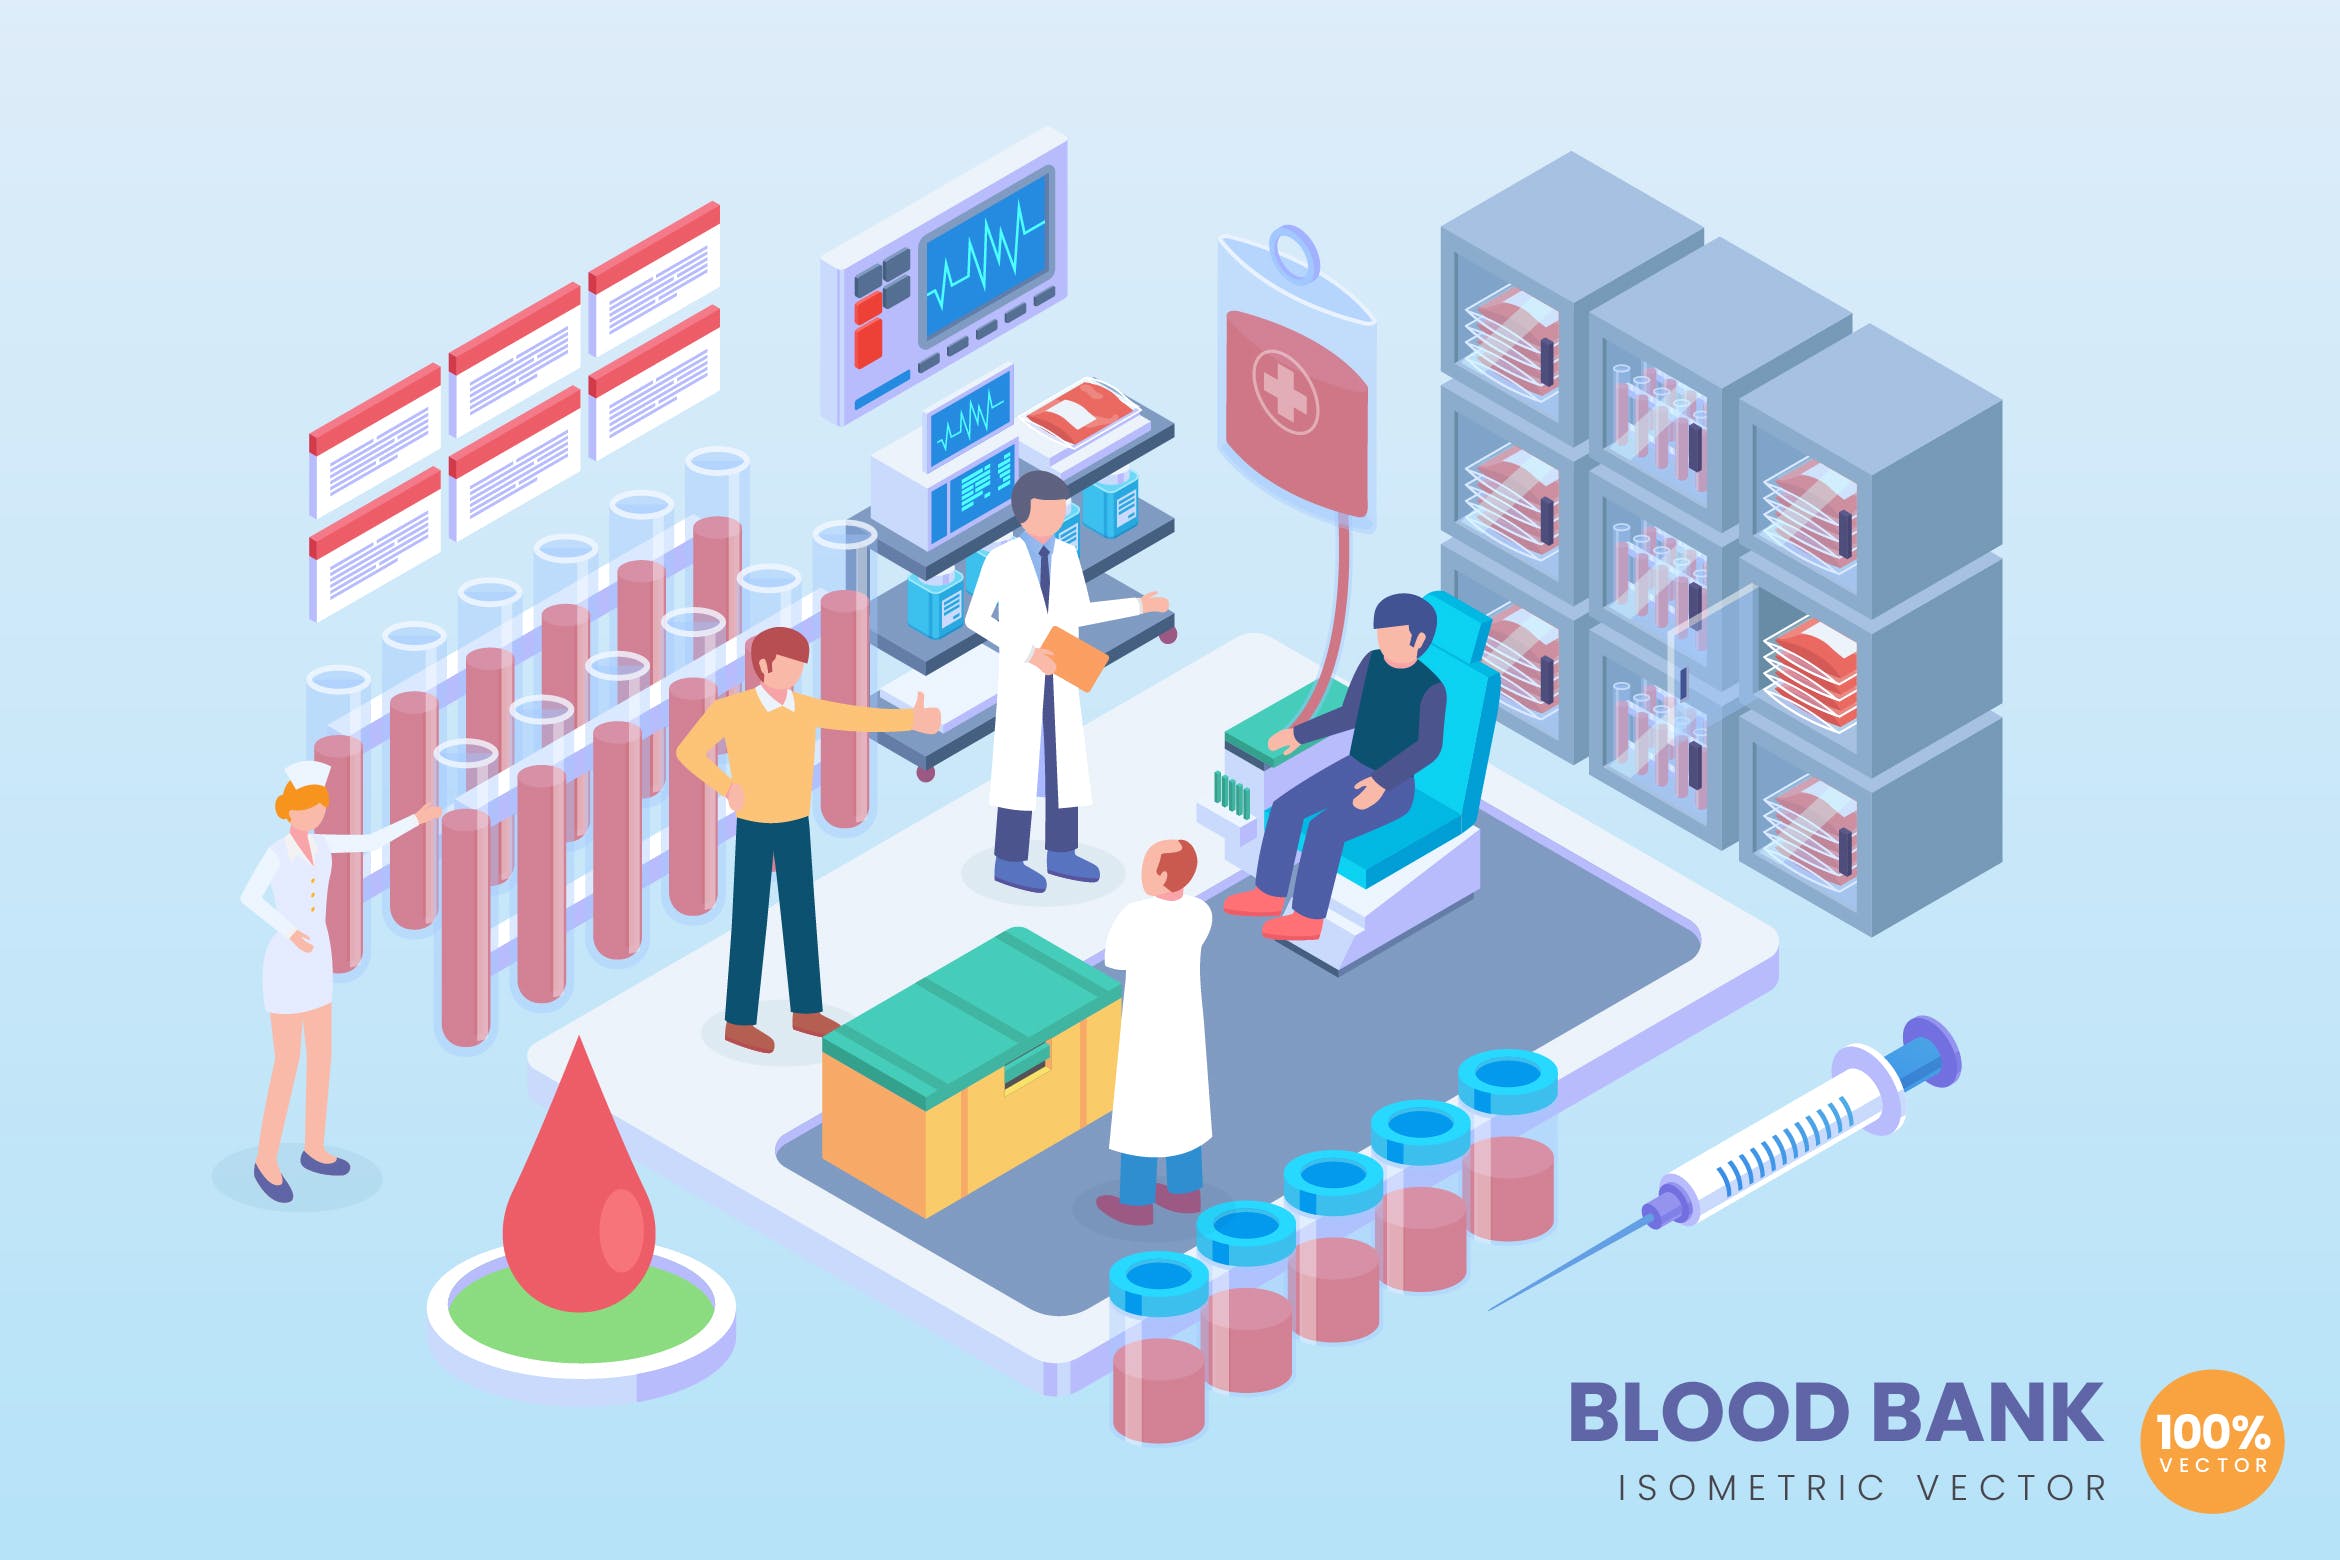 现代血库存储技术主题等距矢量素材中国精选科技概念插画 Isometric Blood Bank Vector Concept插图